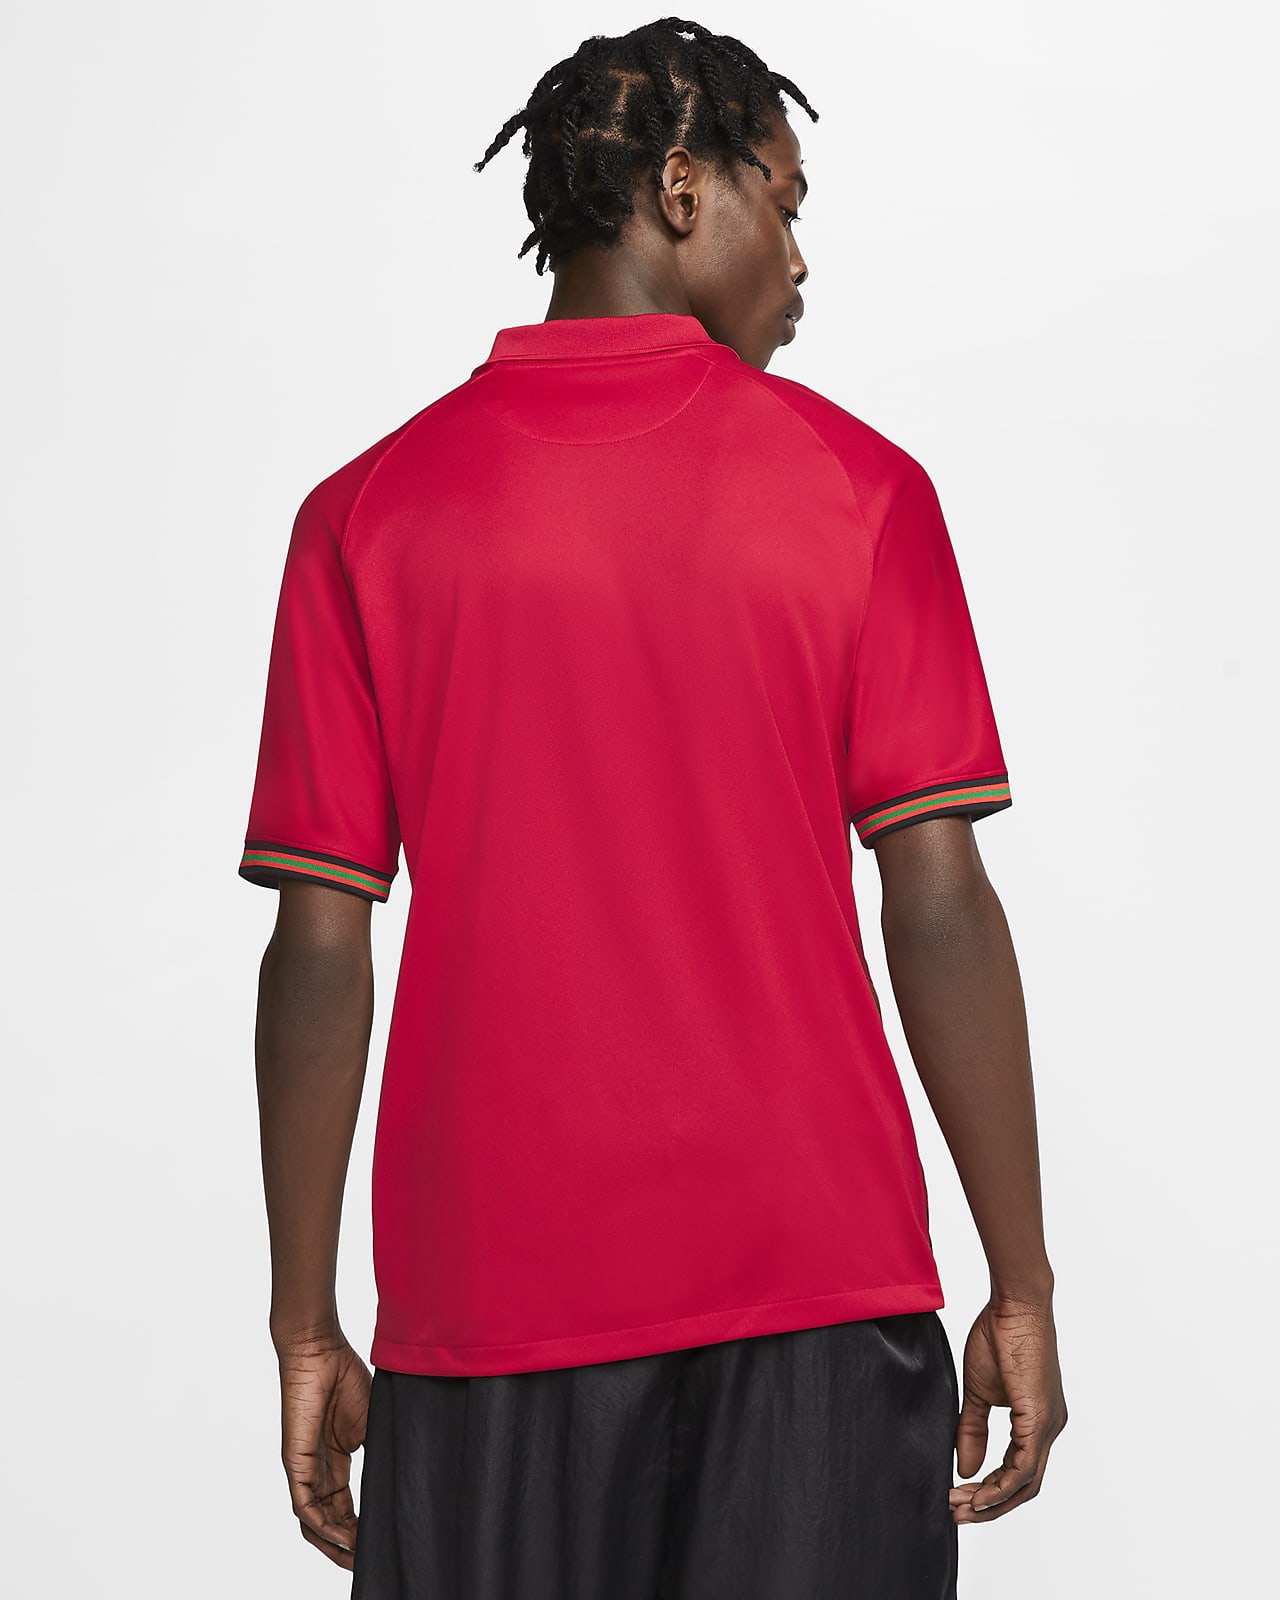 Observatorio Cliente Flor de la ciudad Camiseta de fútbol para hombre Portugal 2020 Stadium Home. Nike.com